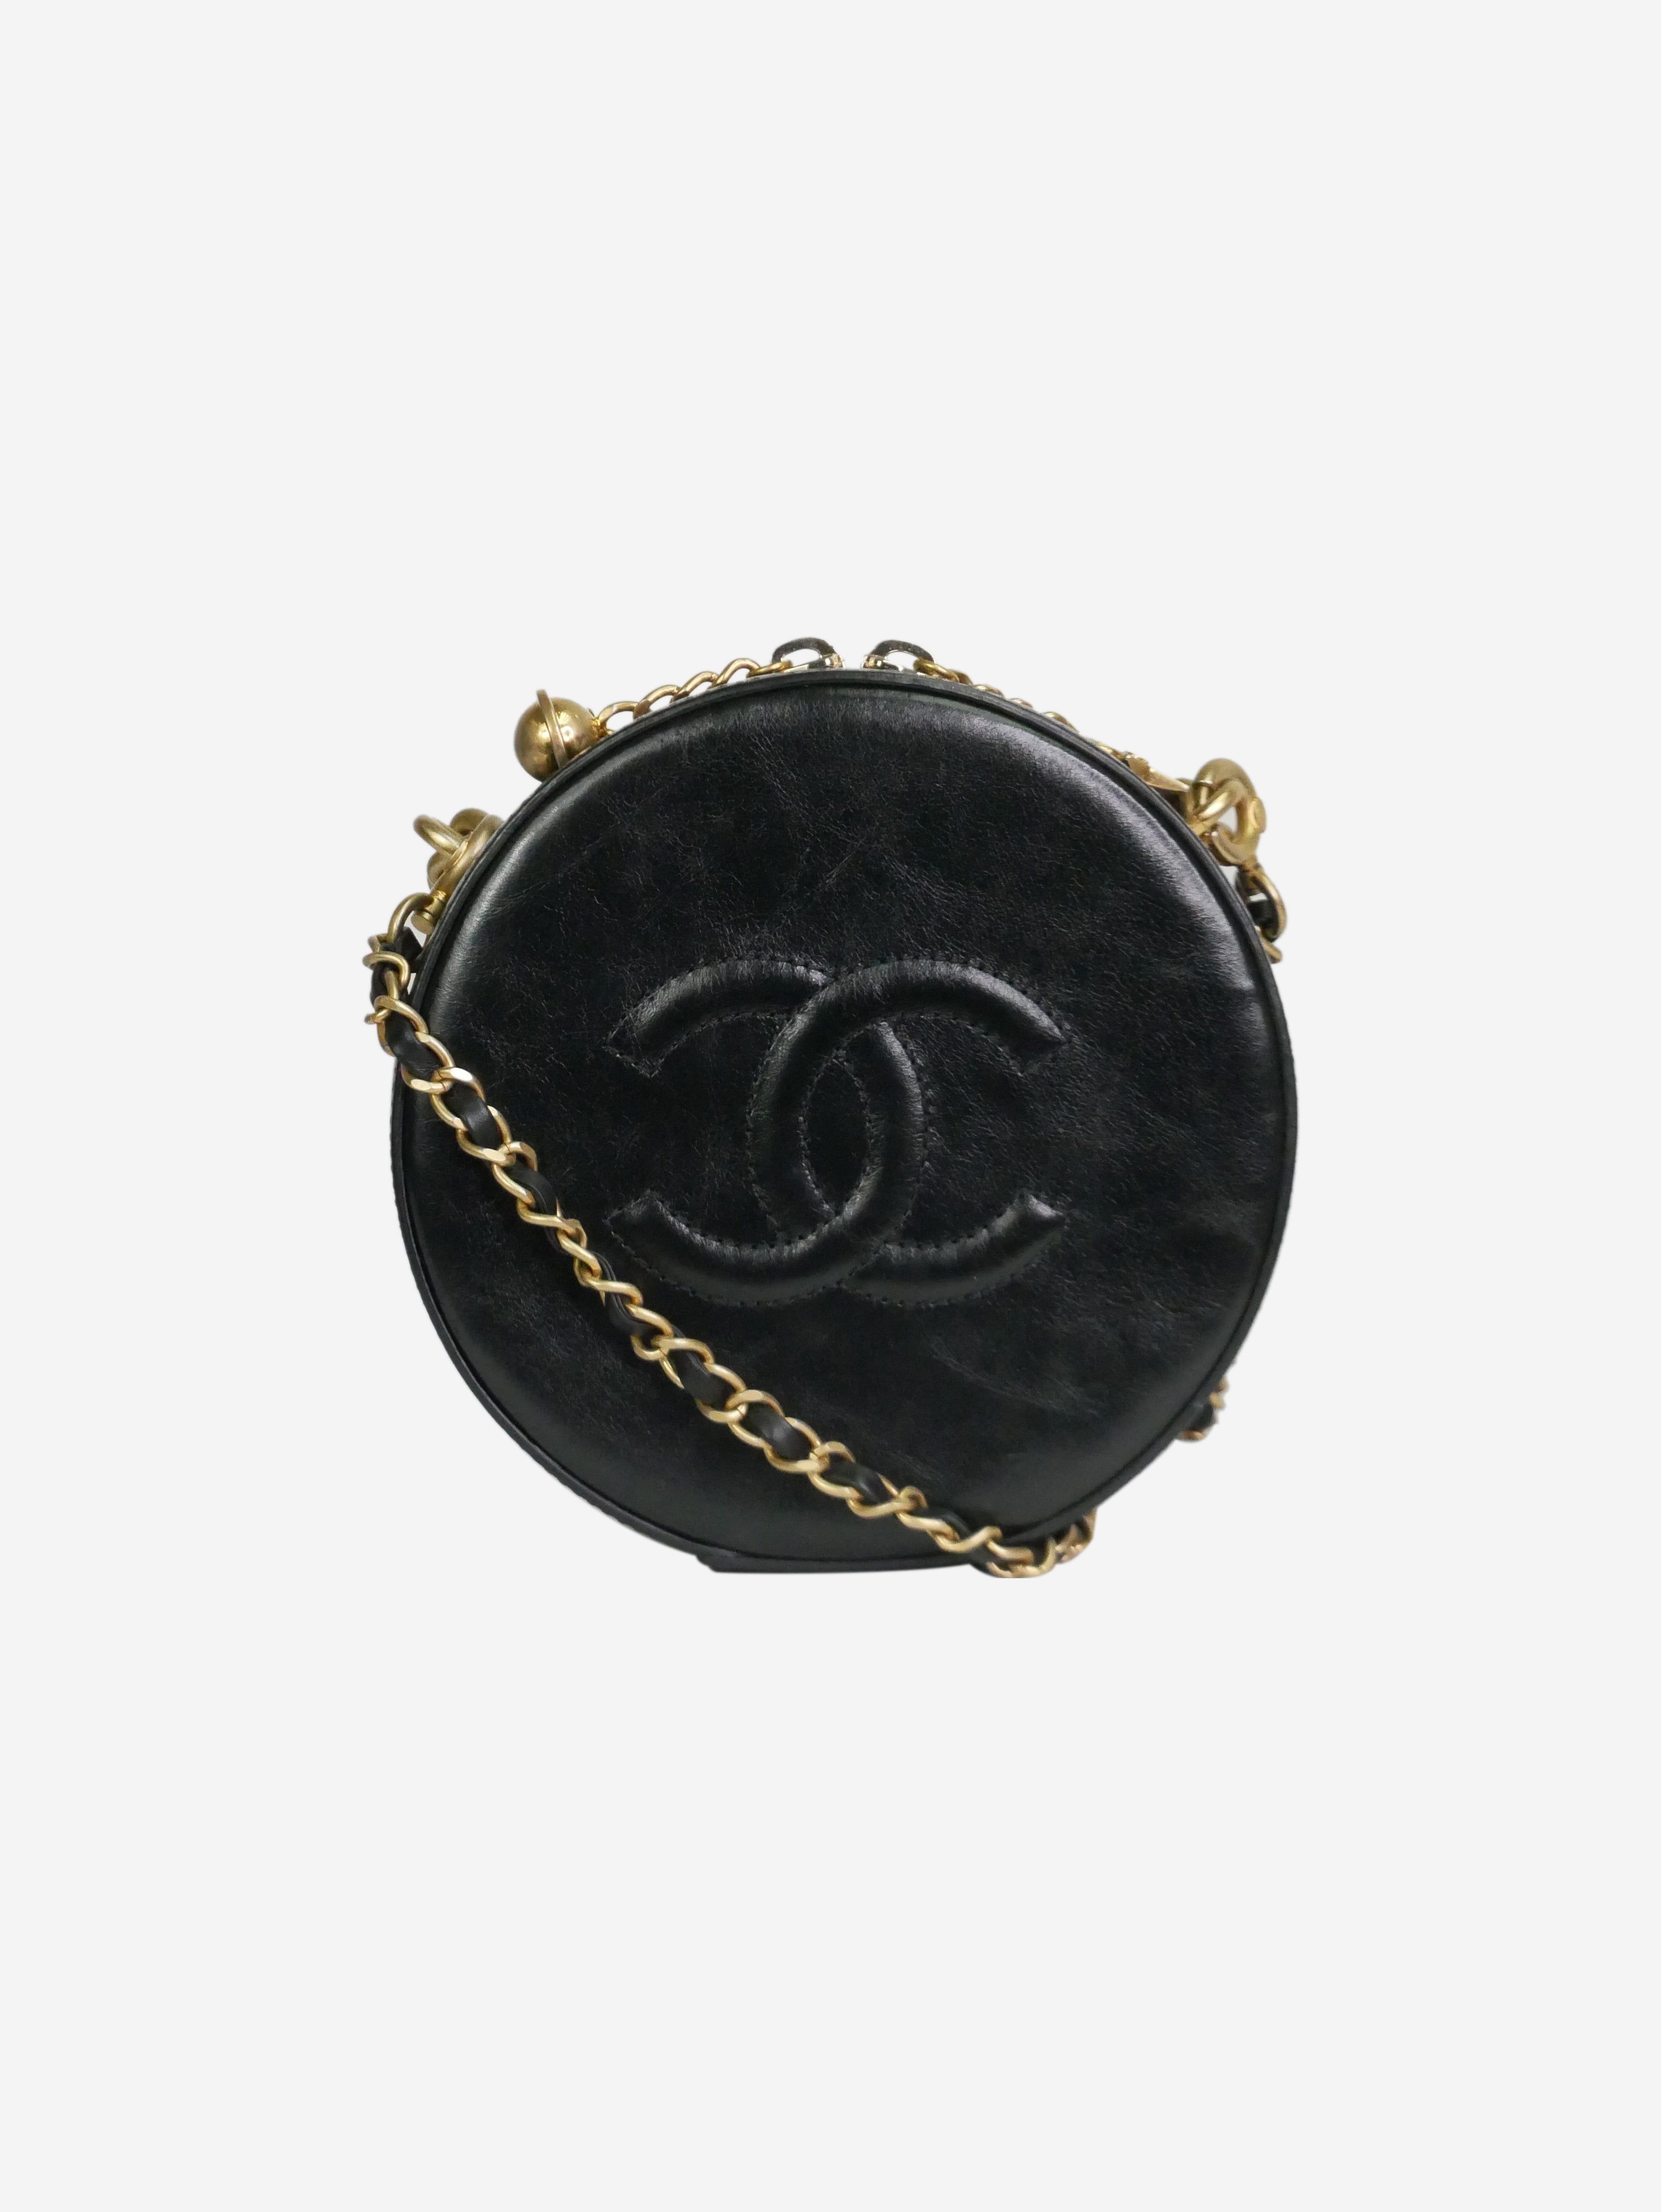 Chanel Black 2018 leather round gold hardware shoulder bag